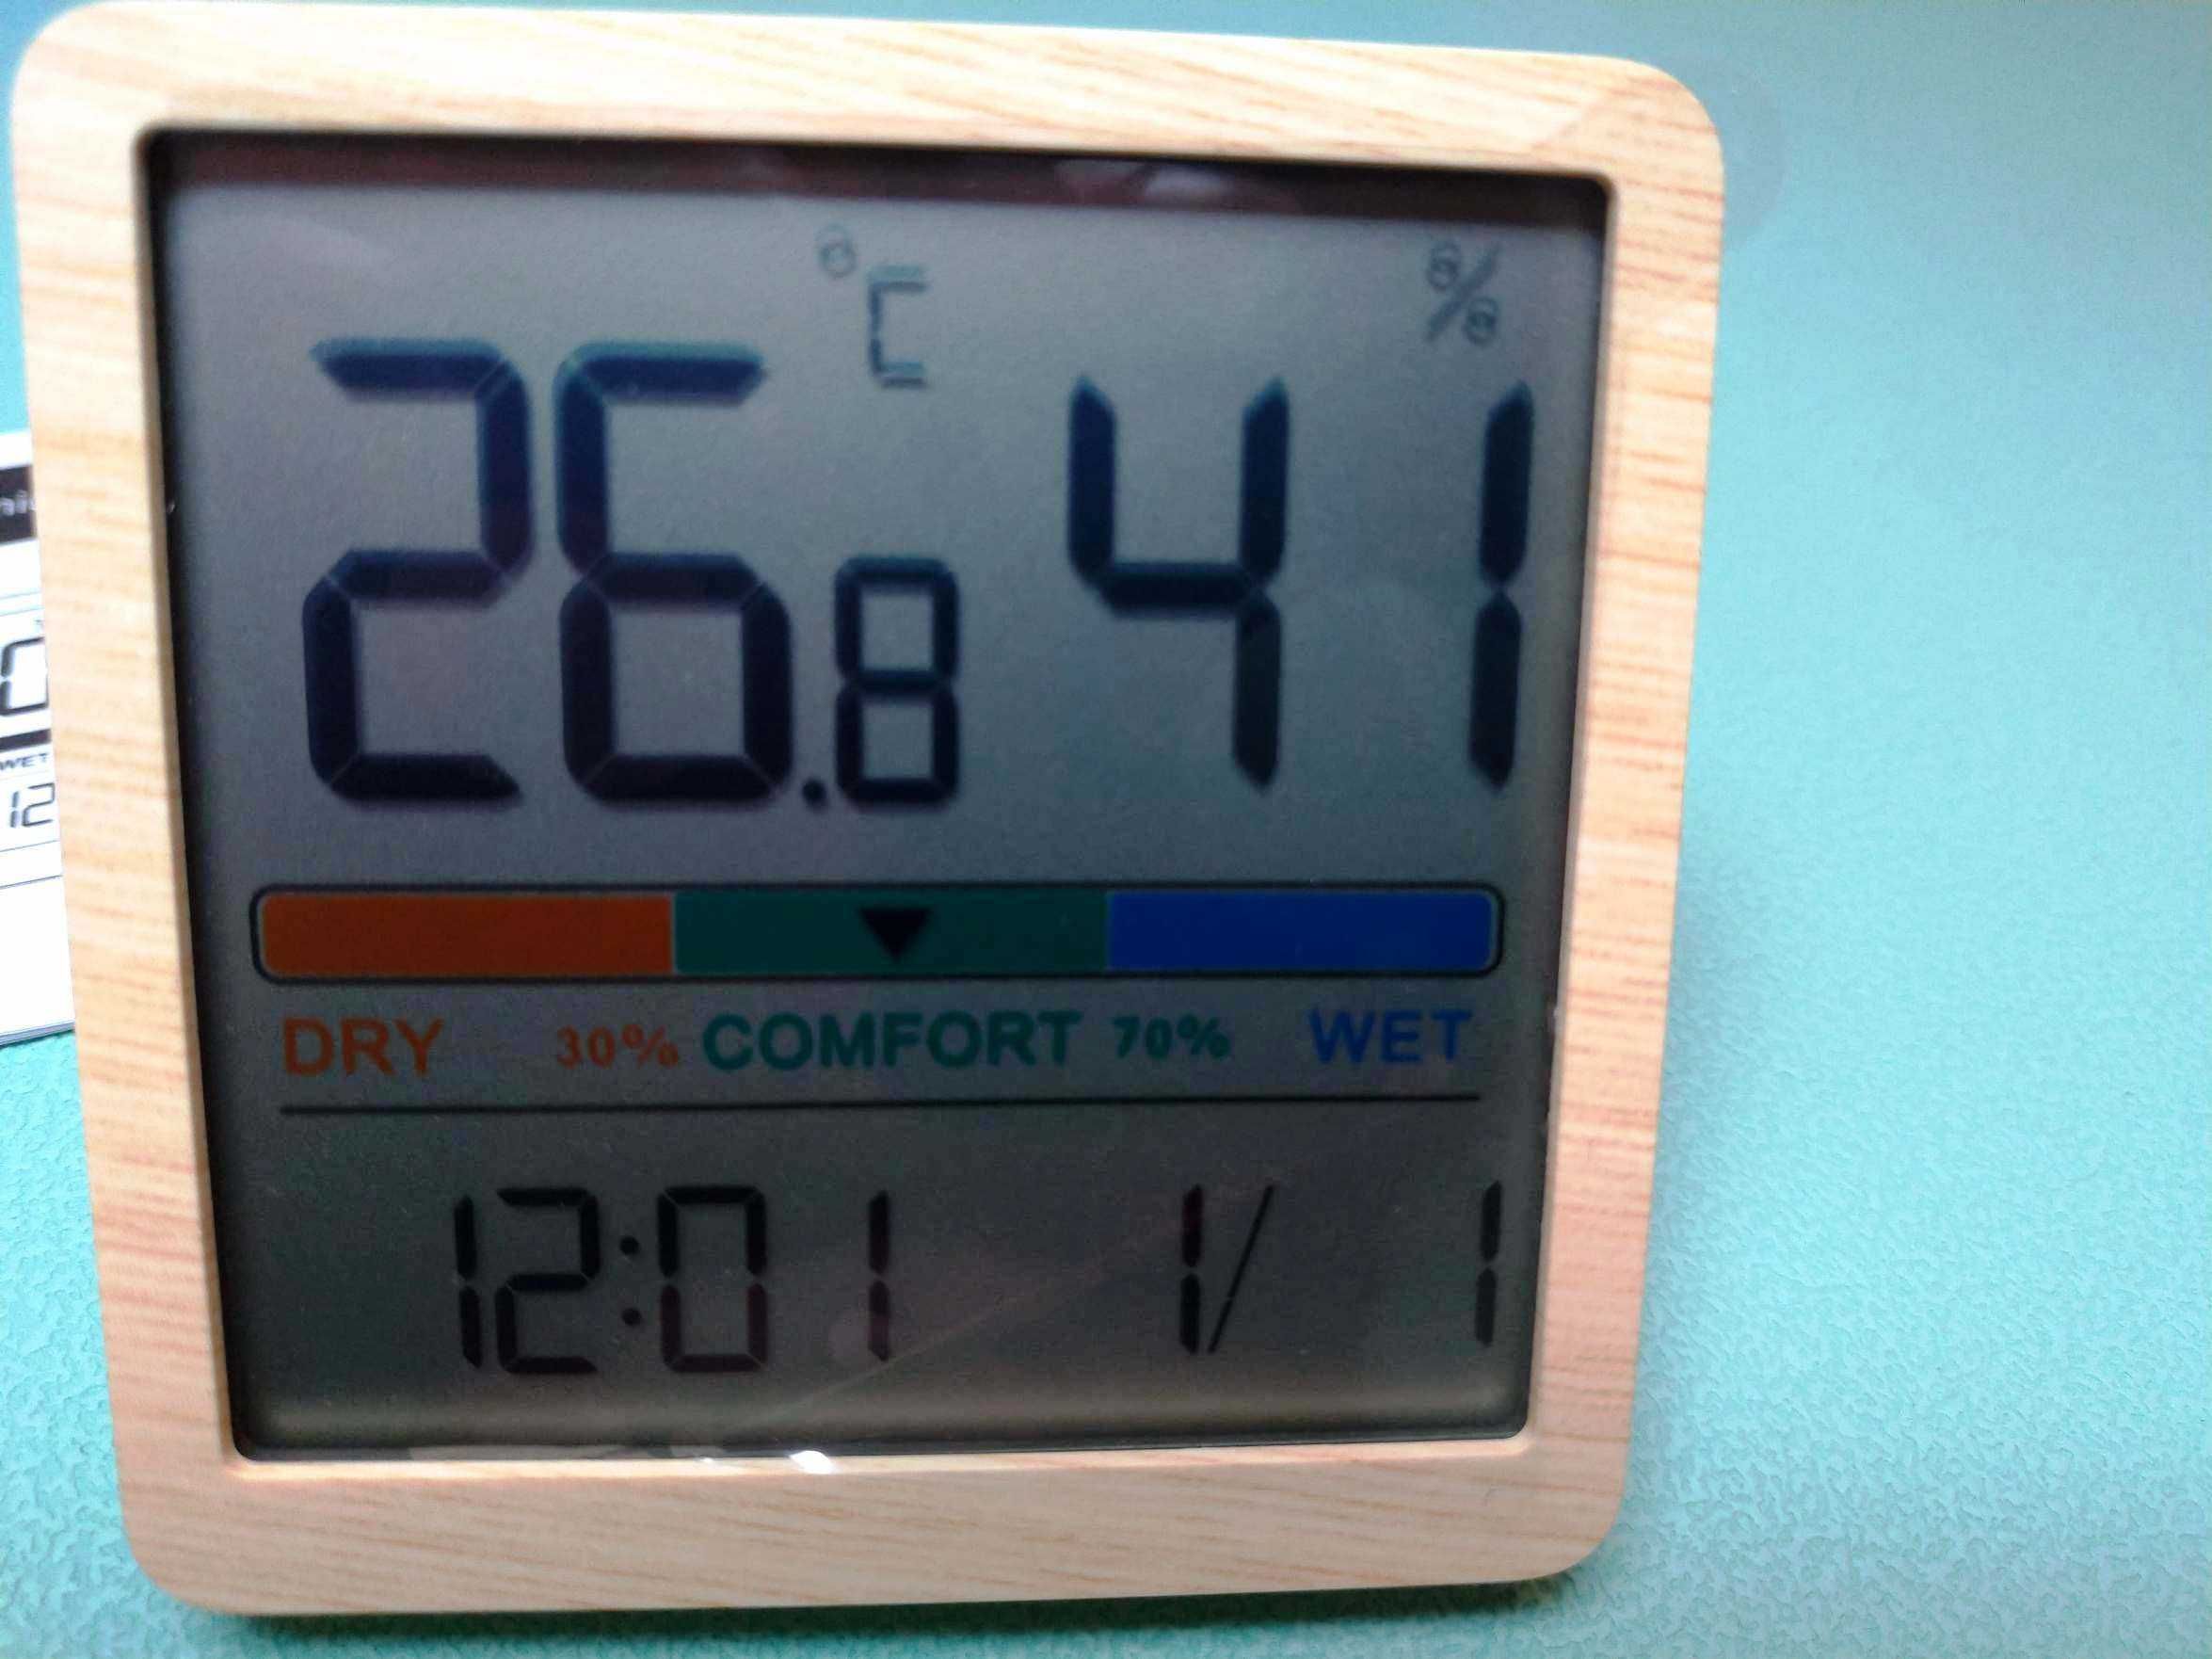 Цифровой часы-гигрометр Clock Xiaomi Humidity влажность температура